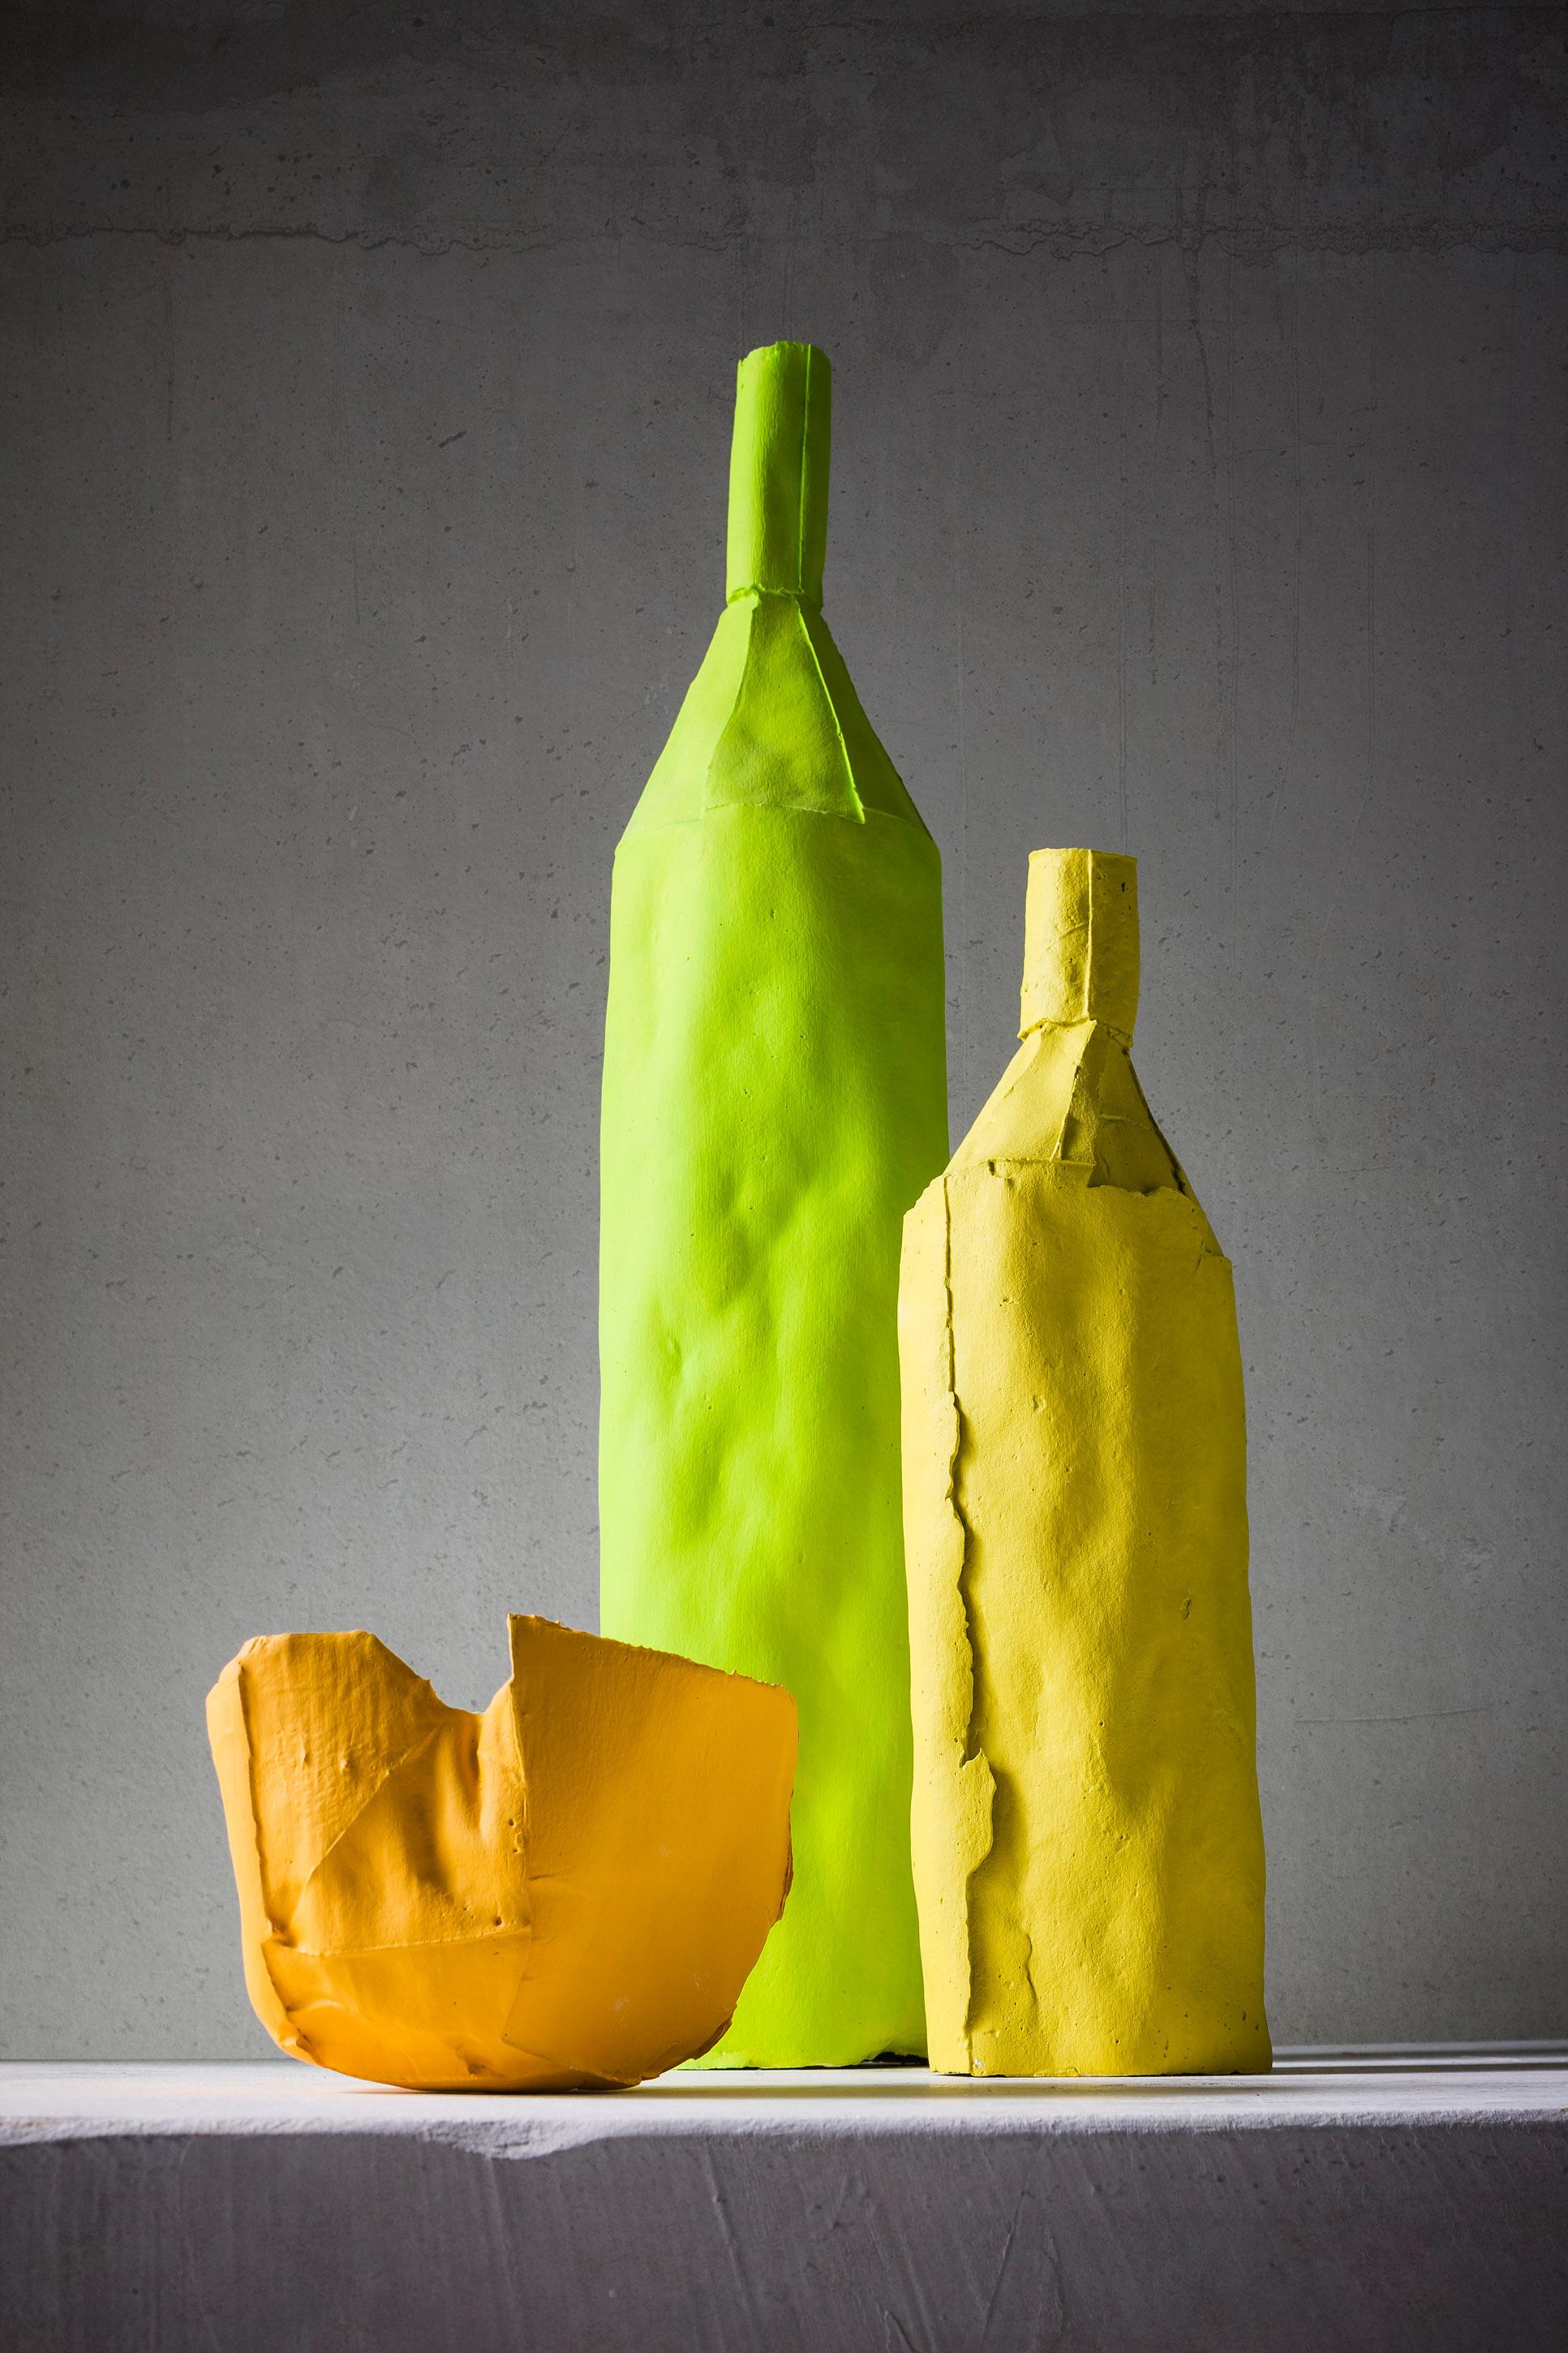 Der unverwechselbare Stil der italienischen Keramikerin Paola Paronetto zeigt sich in der Verwandlung von Gebrauchsgegenständen in exklusive dekorative und funktionale Kunstwerke. Diese bemerkenswerte gelbe Flasche weist eine fesselnde Textur auf,